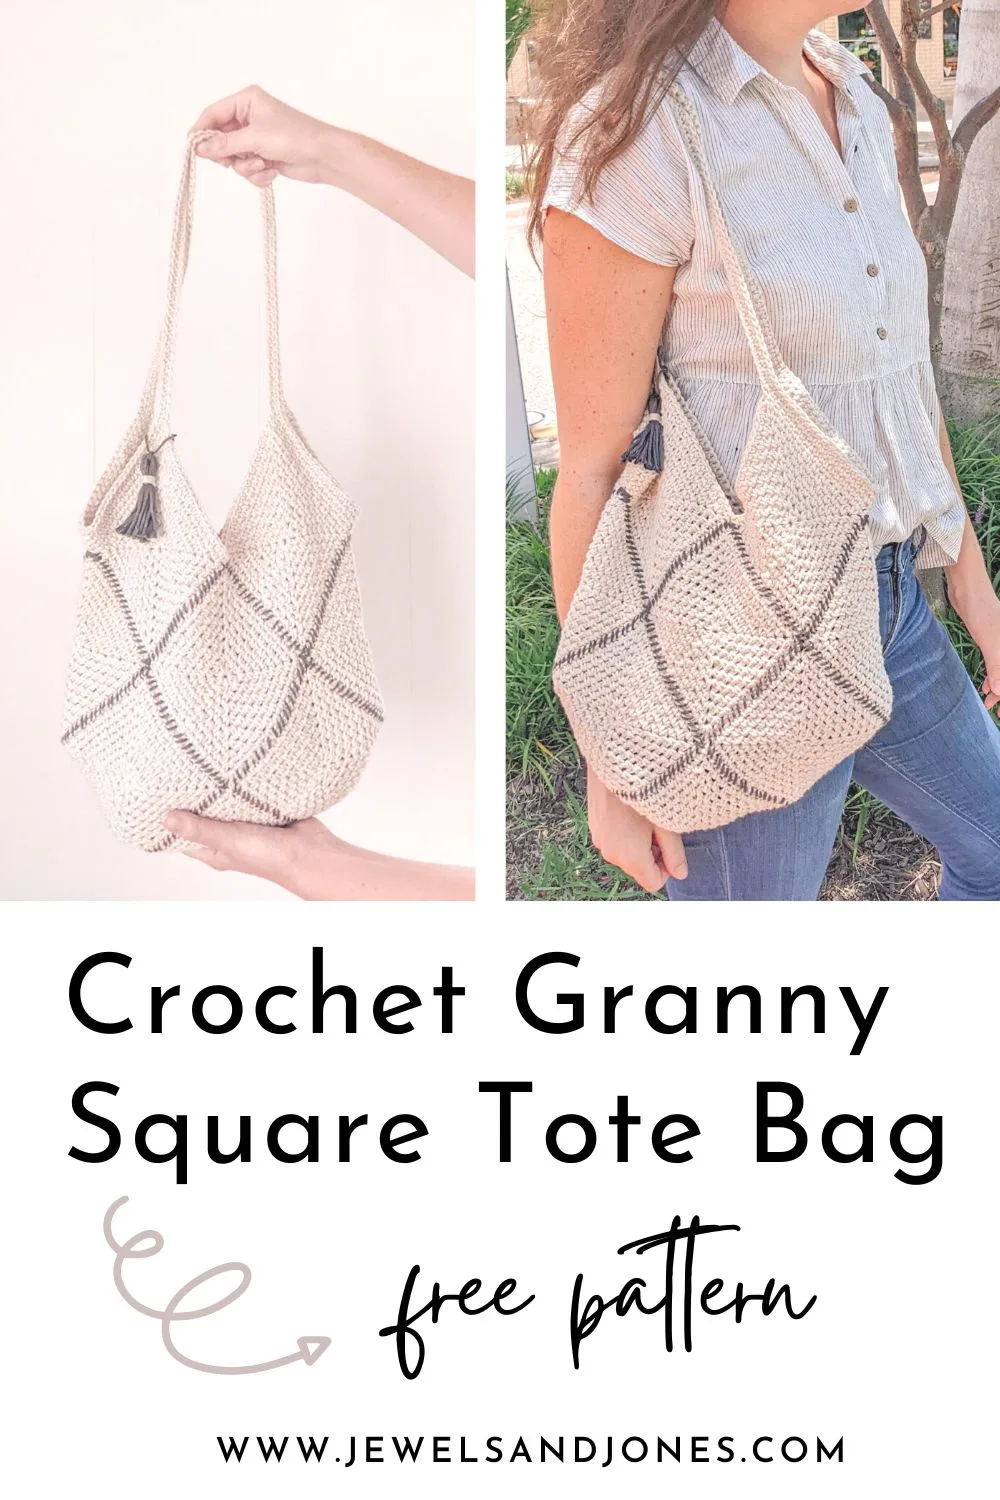 A crochet granny square tote bag pattern.